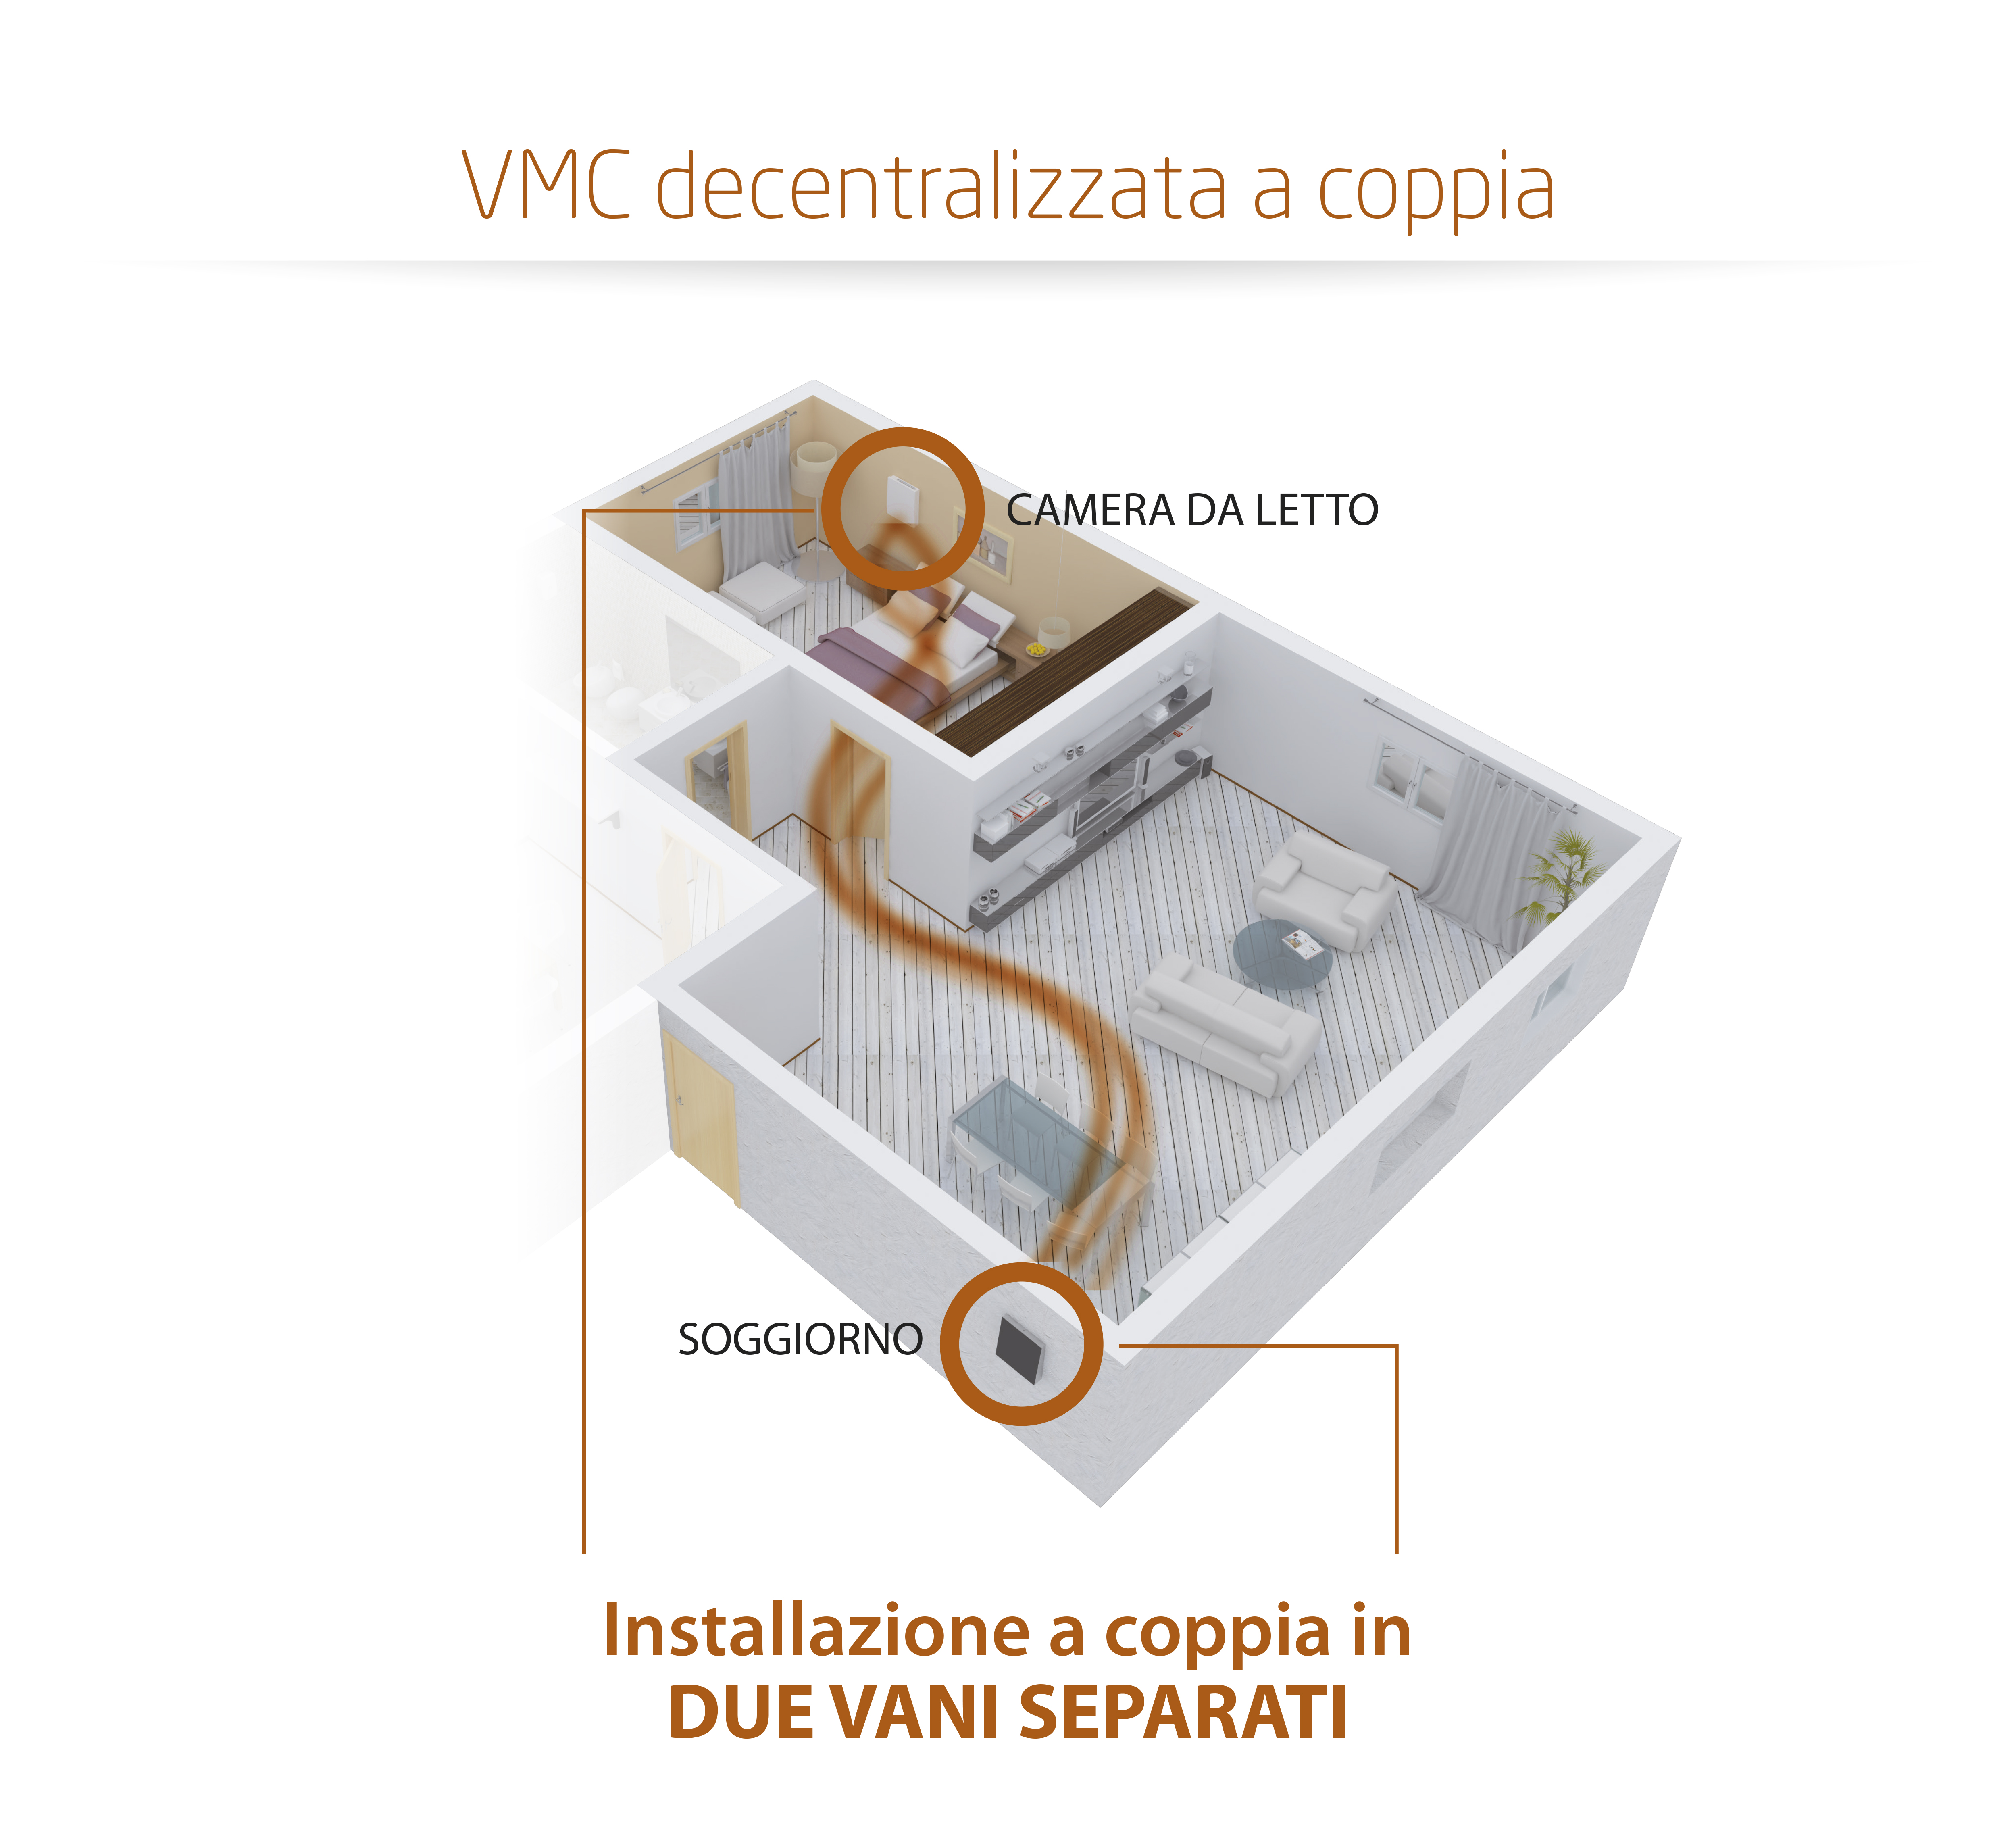 Ventilazione meccanica controllata per umidità installazione mono ambiente a coppia in due stanze diverse